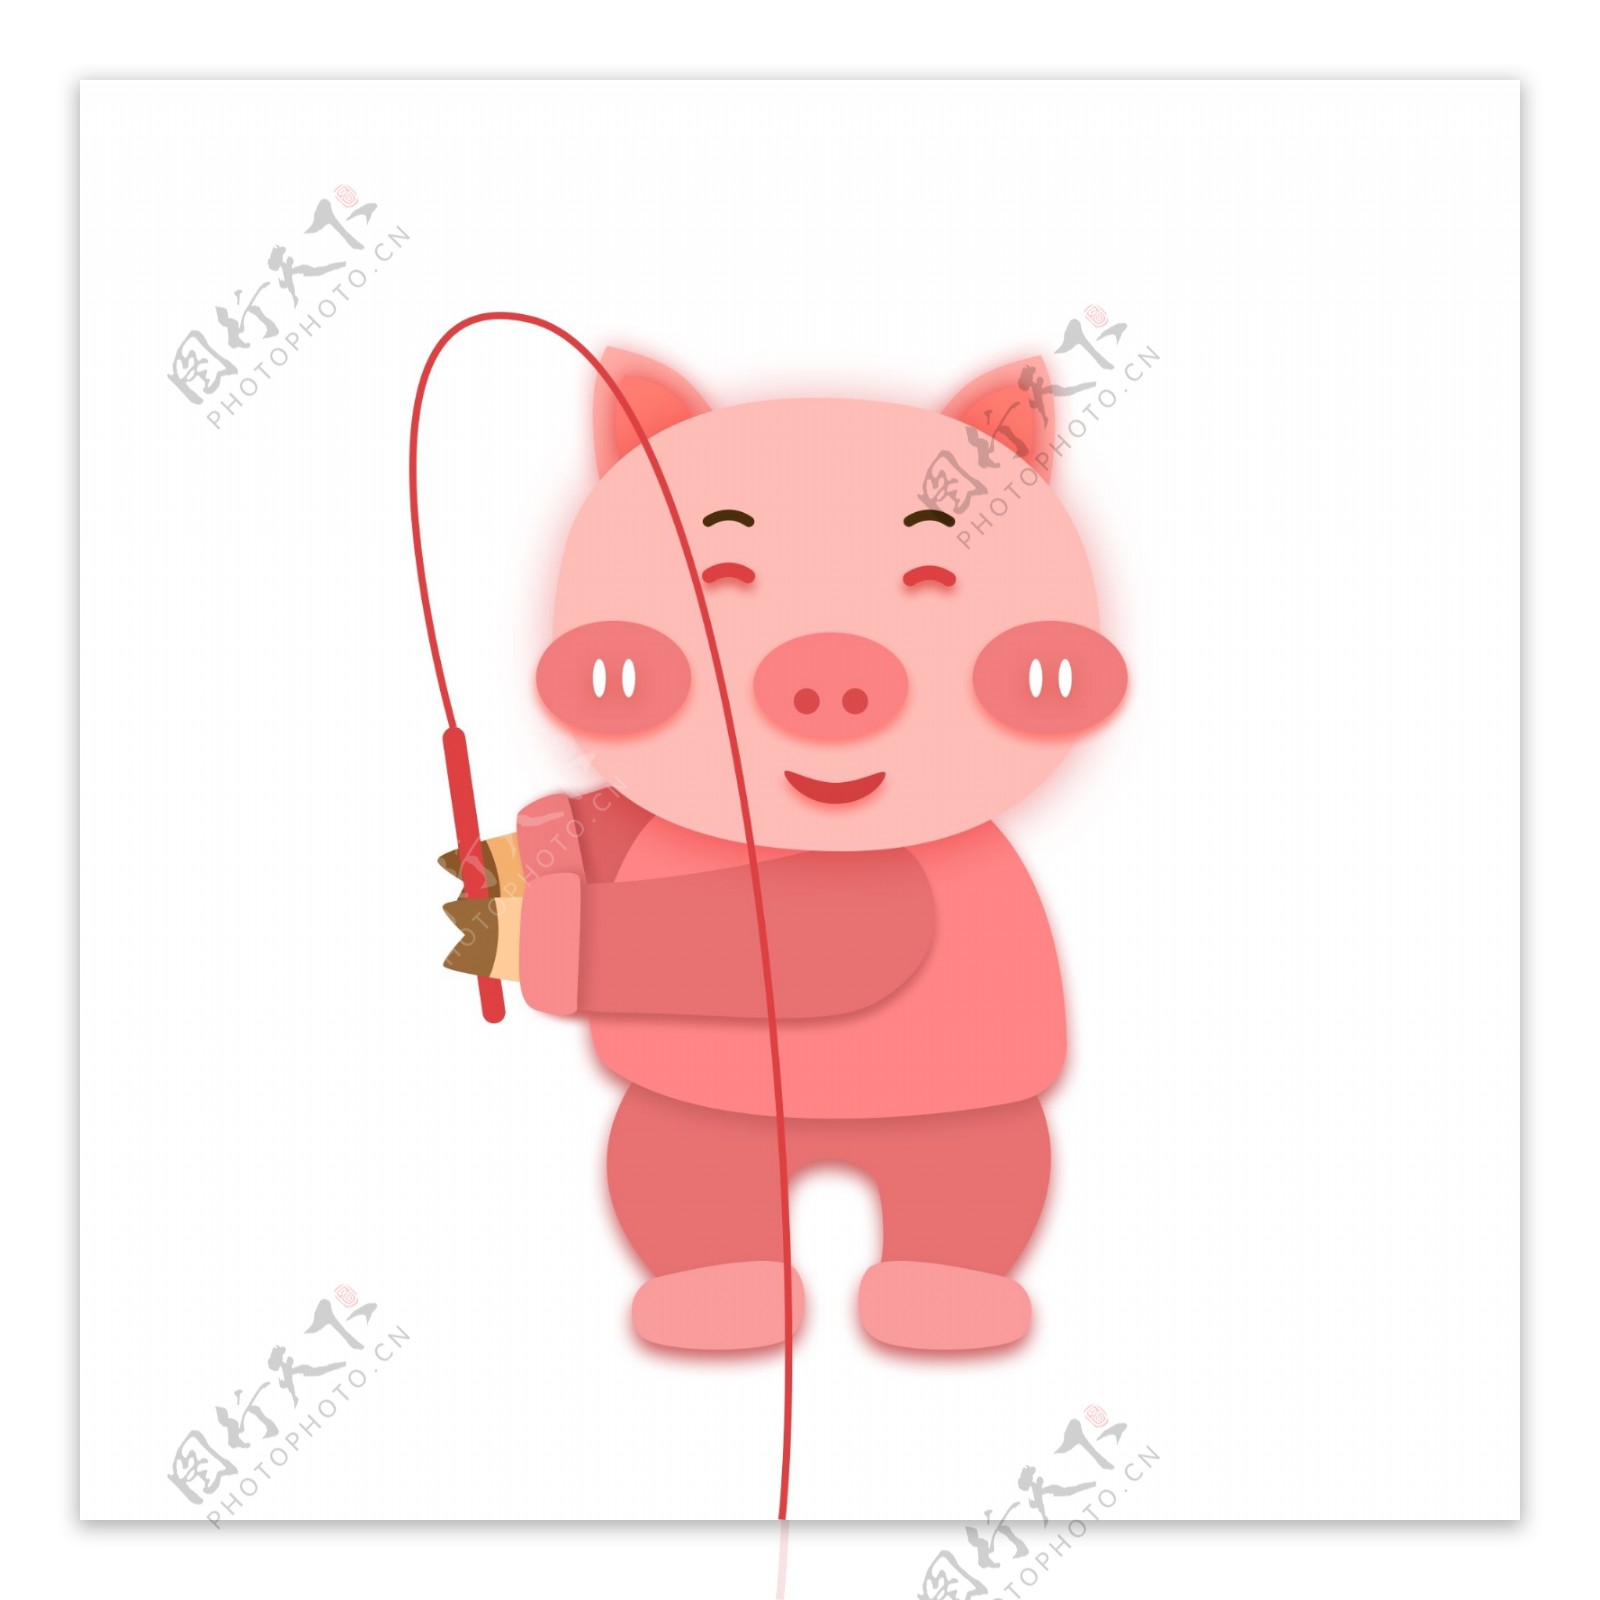 钓鱼的猪形象元素设计